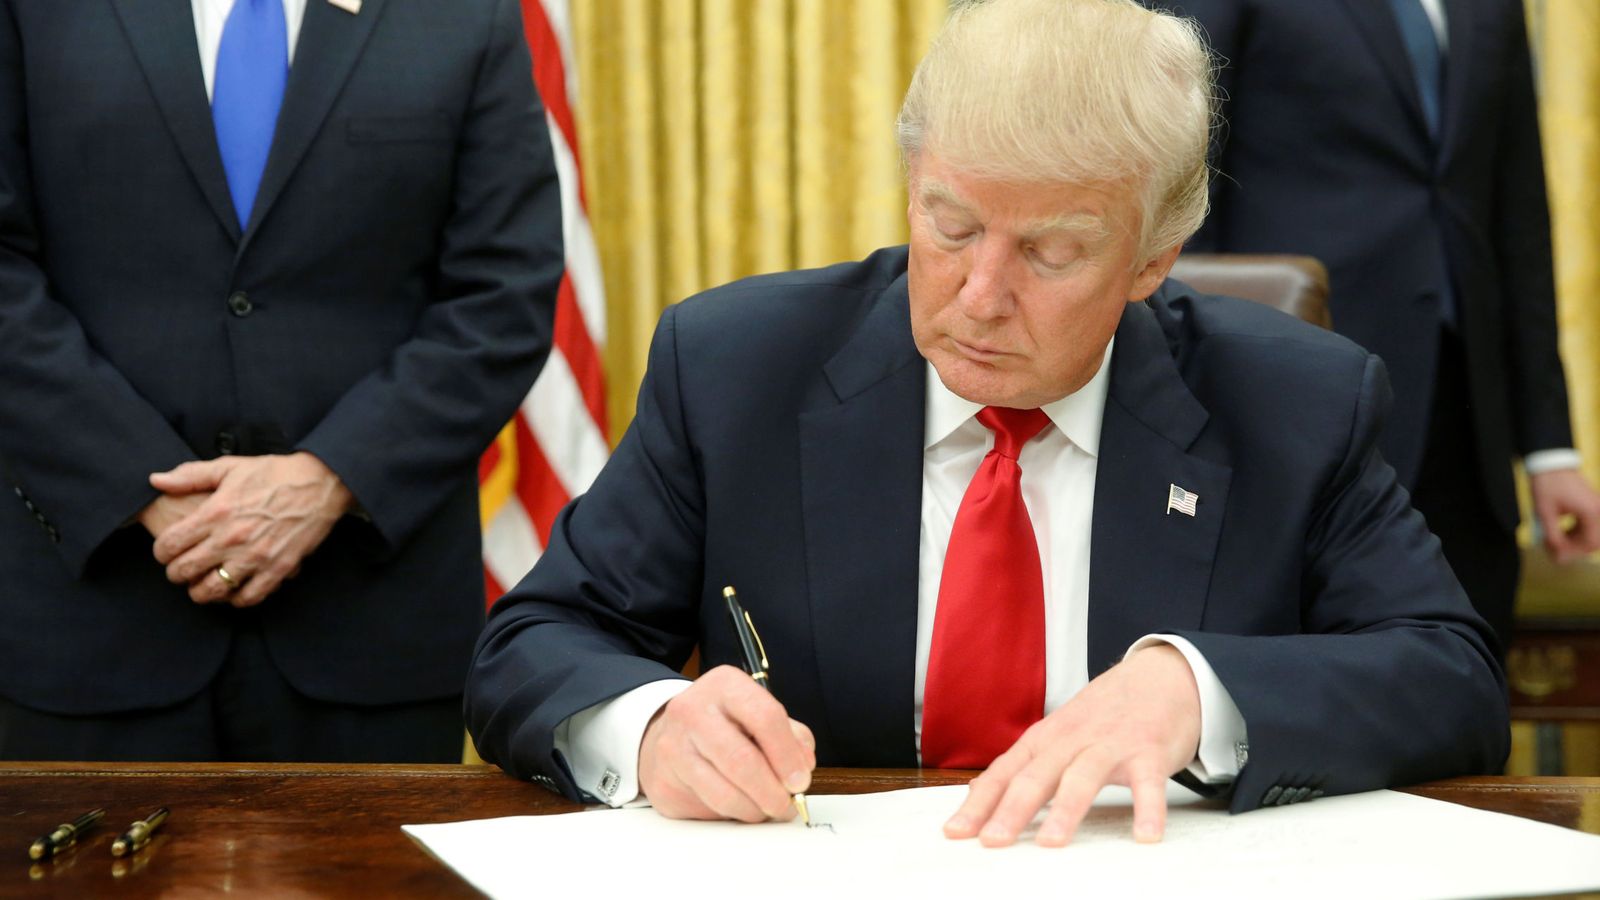 Foto: Donald Trump firma su primera orden ejecutiva en el Despacho Oval, contra el Obamacare, horas después de su investidura (Reuters)